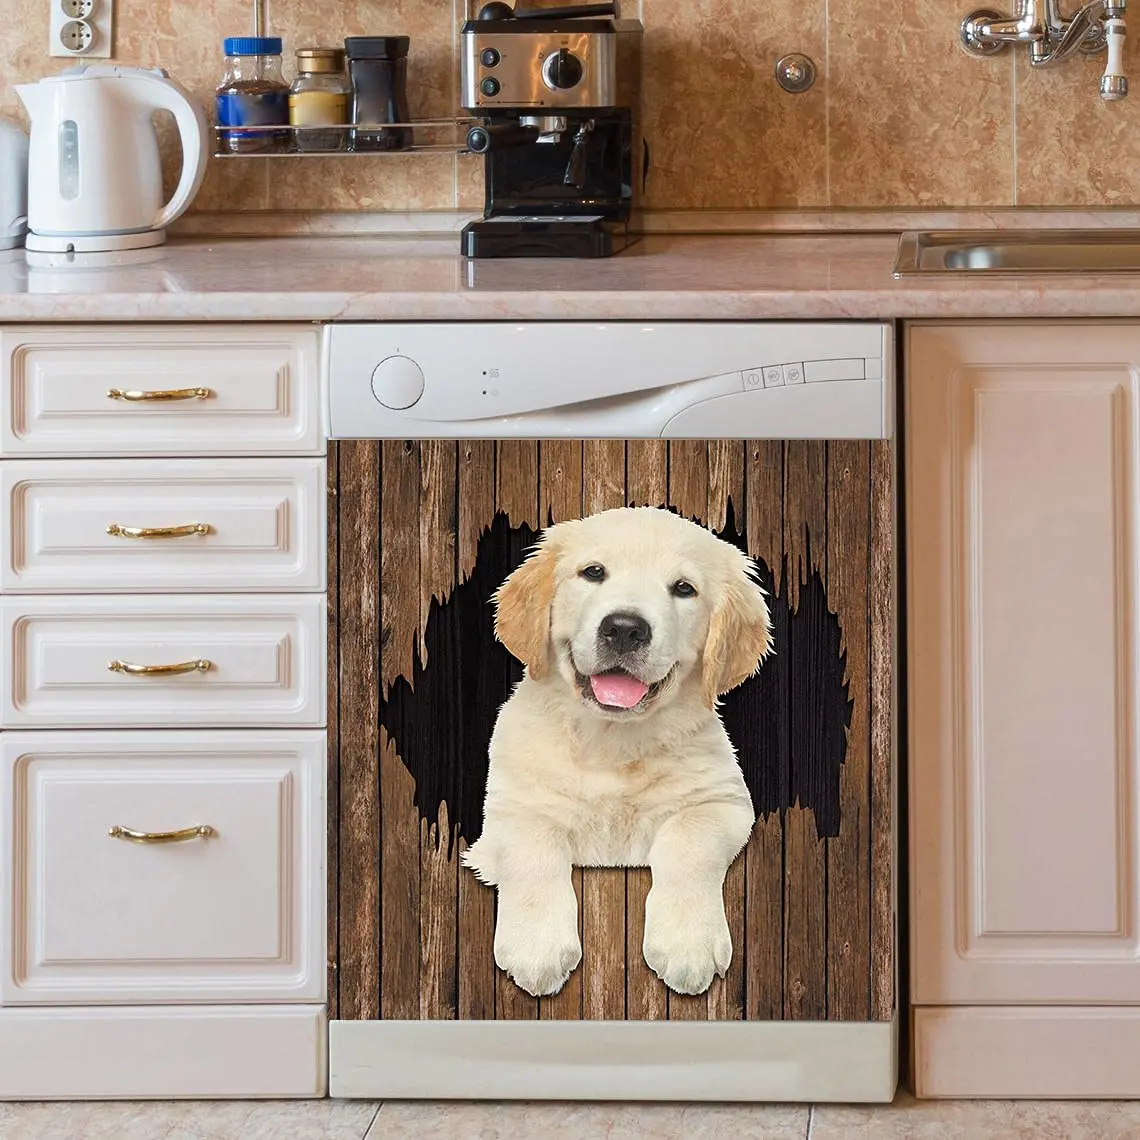 

Lovely Dogs Animal Dishwasher Cover Magnetic Decorative Sticker,Golden Retriever Fridge Door Cover Sheet, Moms Gift, Wood Backg